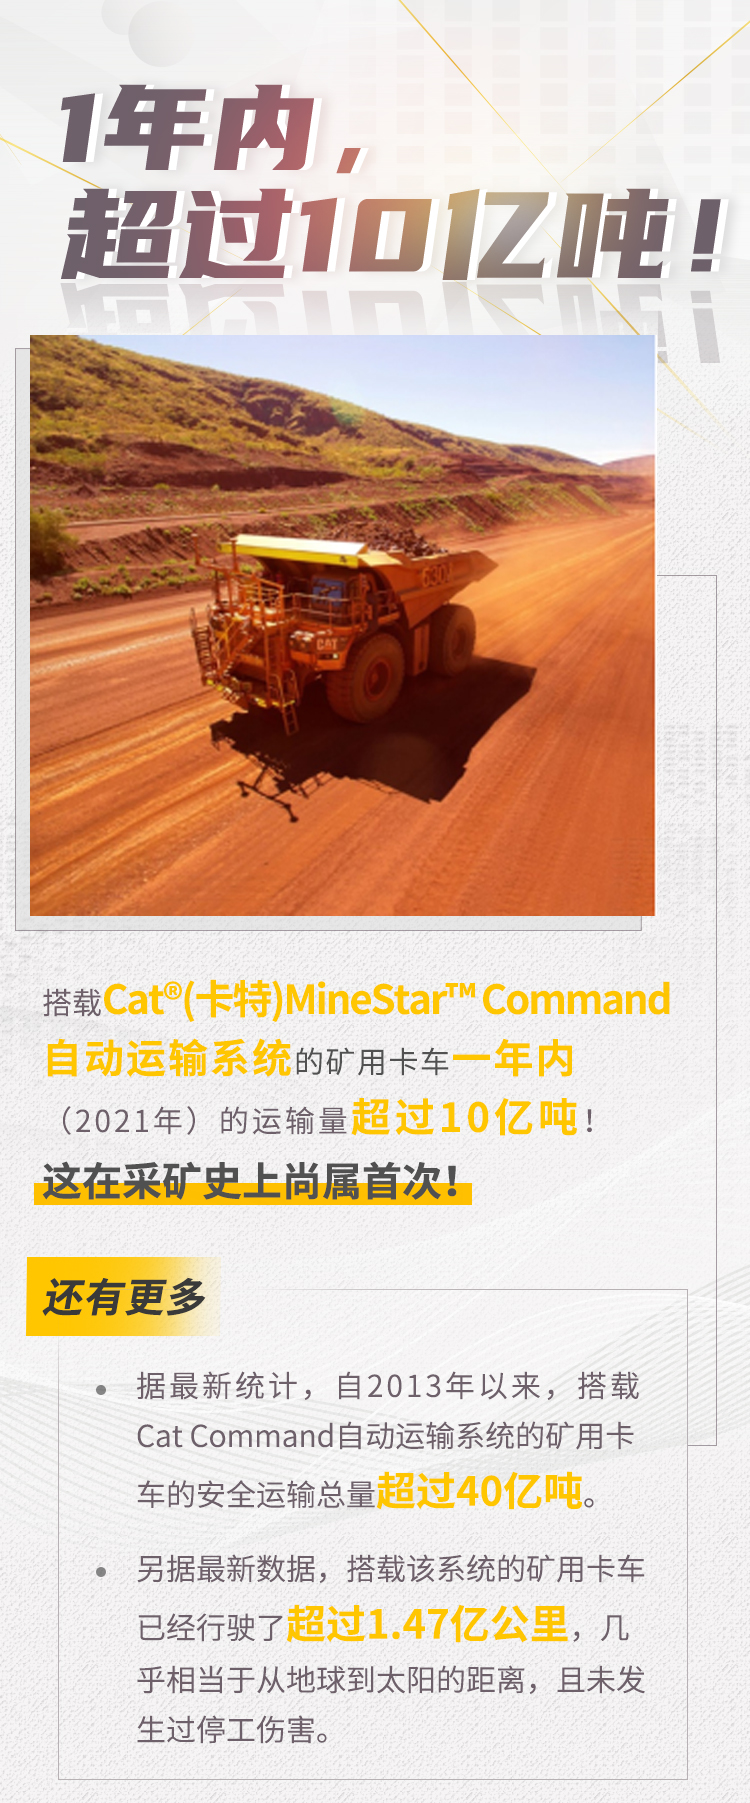 2021年搭载CAT®（卡特）MineStar™Command自动运输系统的矿用卡车的运输量超过10亿吨